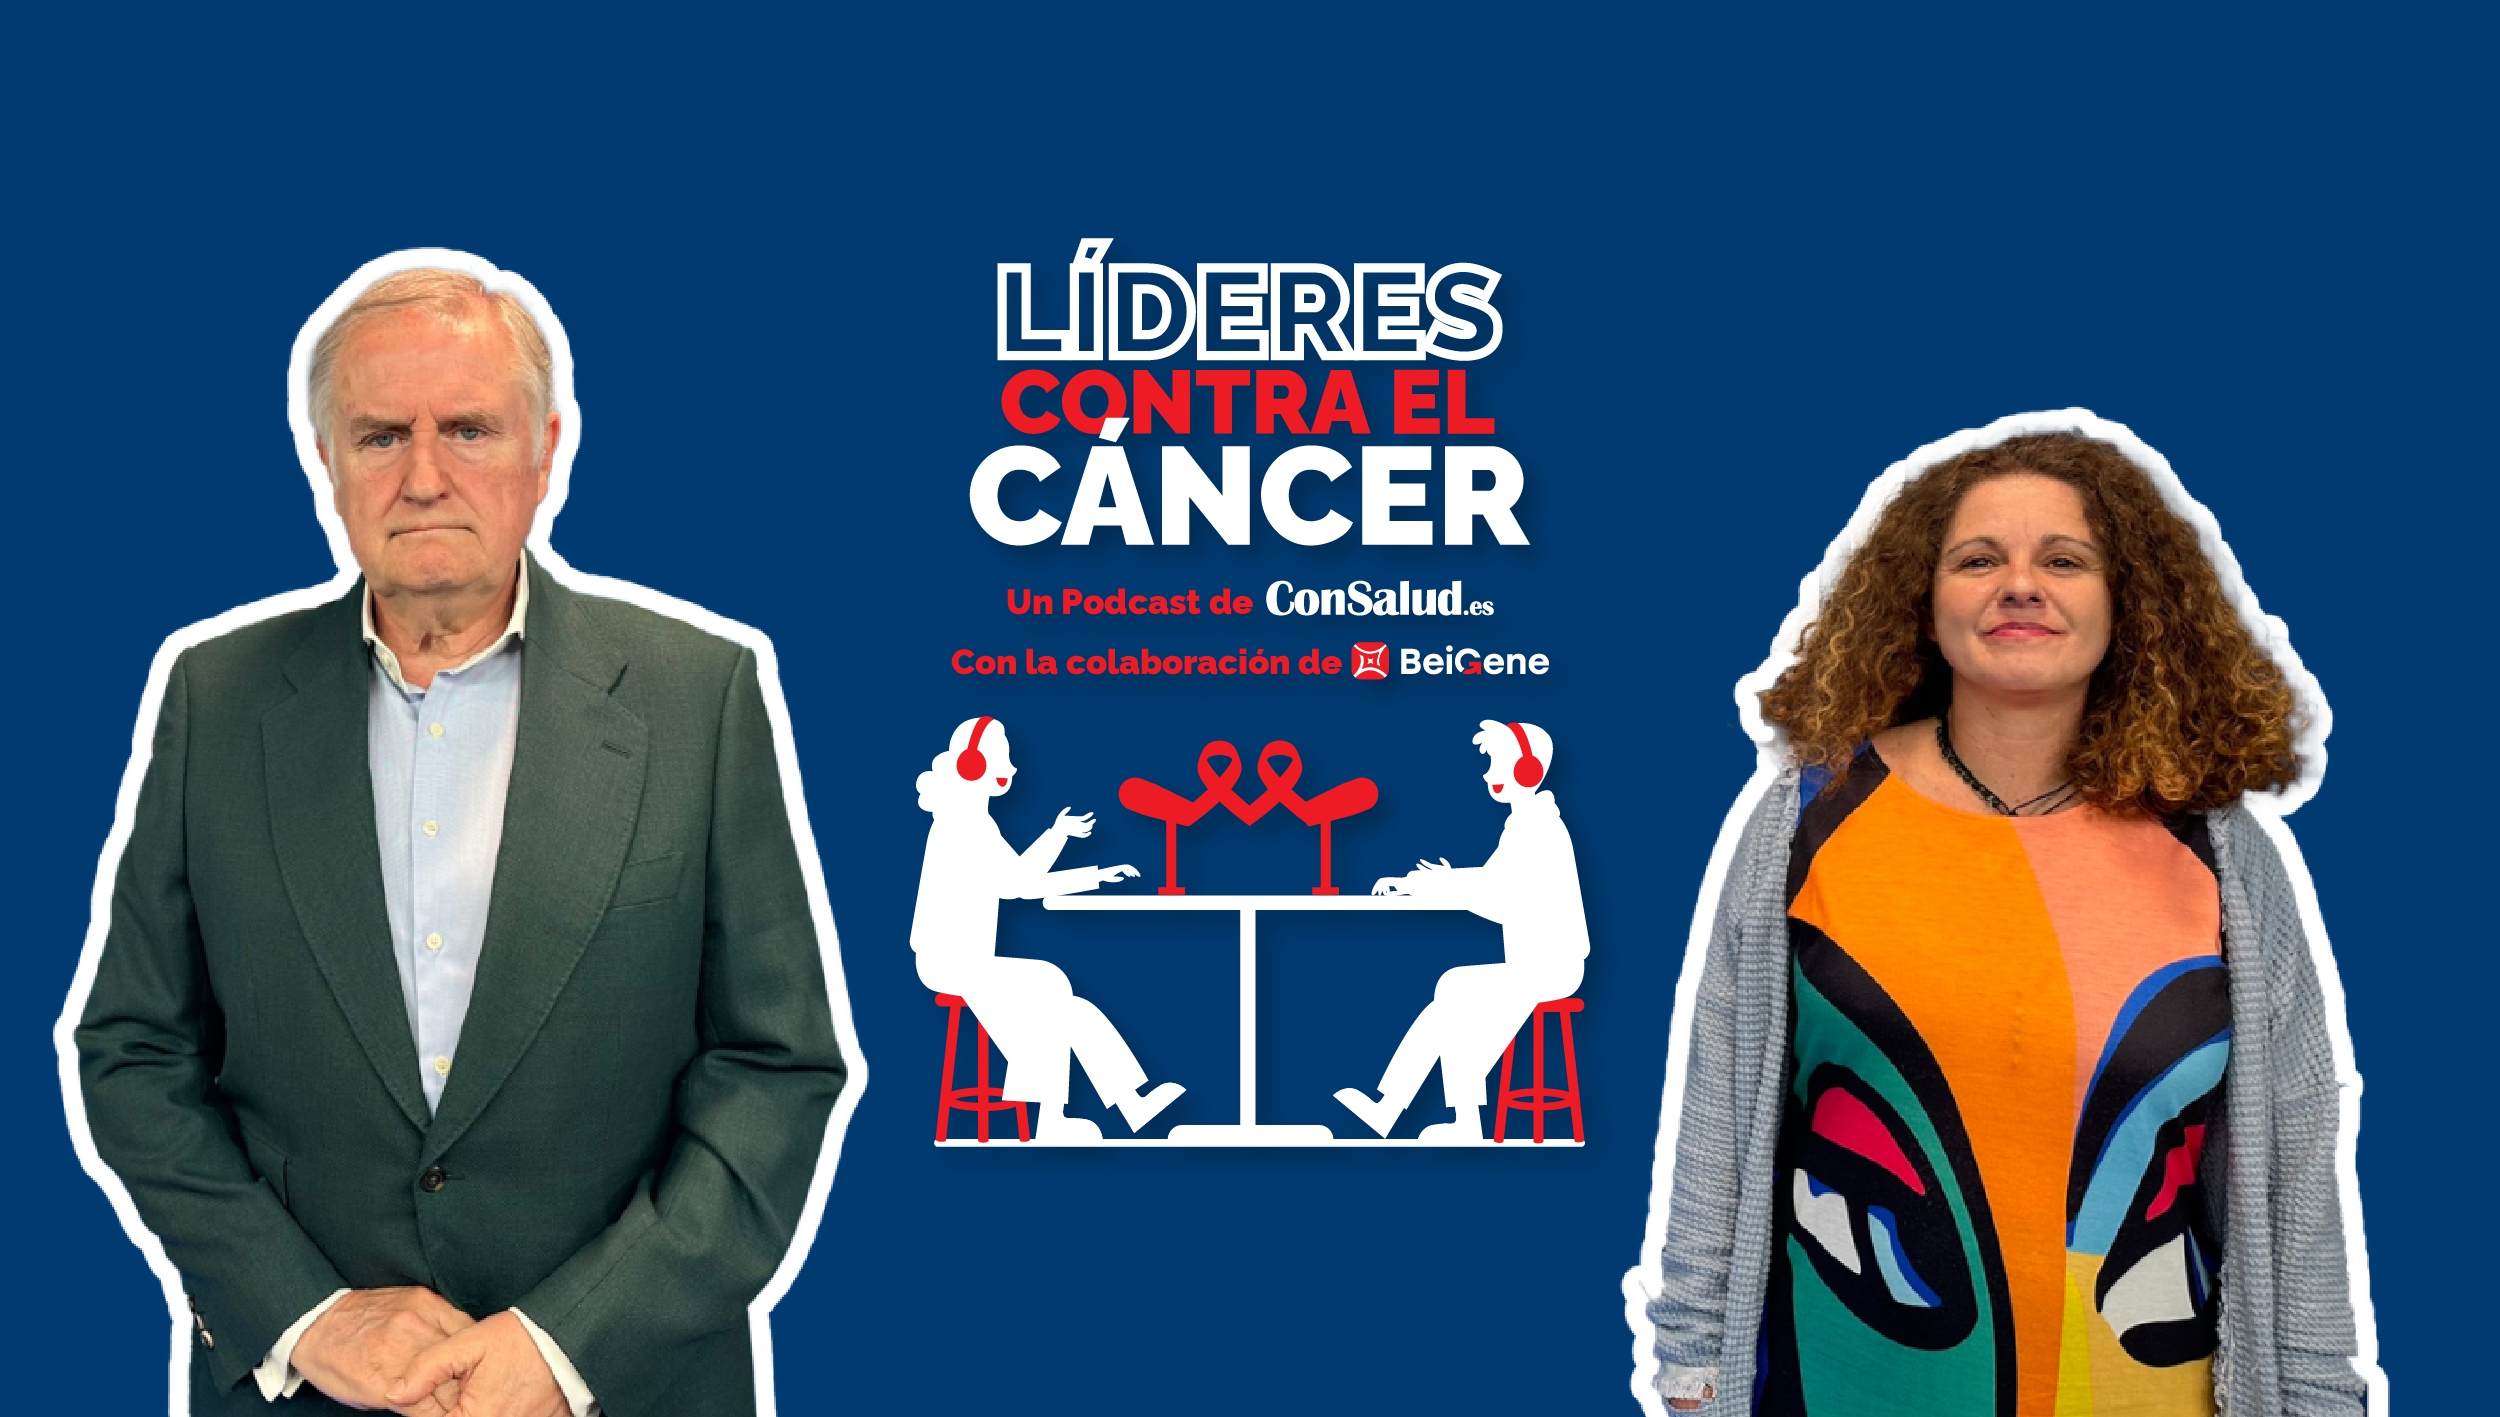 Líderes Contra el Cáncer: Oncología y Niños, con Luis Madero e Isabel Muelas (Foto. ConSalud.es)